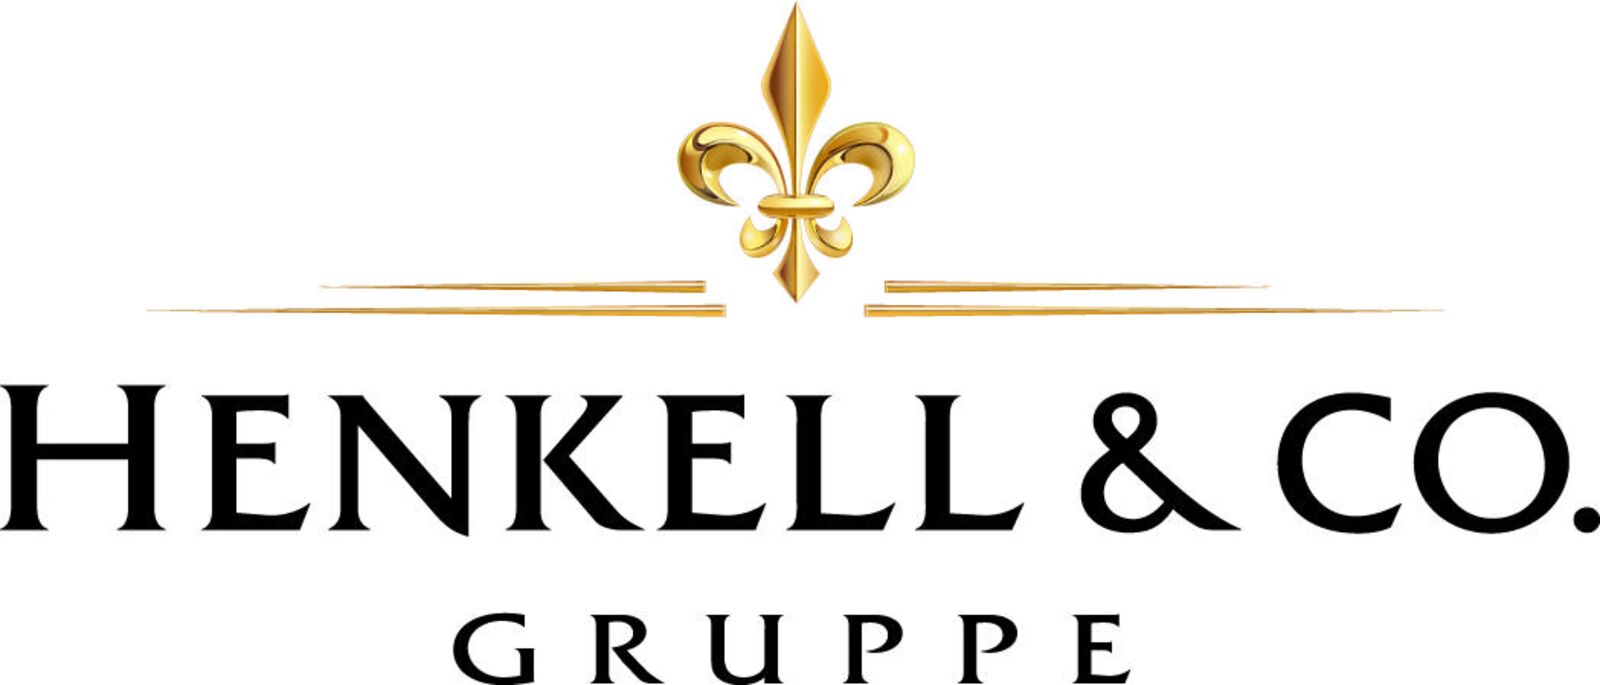 Henkell & Co. Gruppe